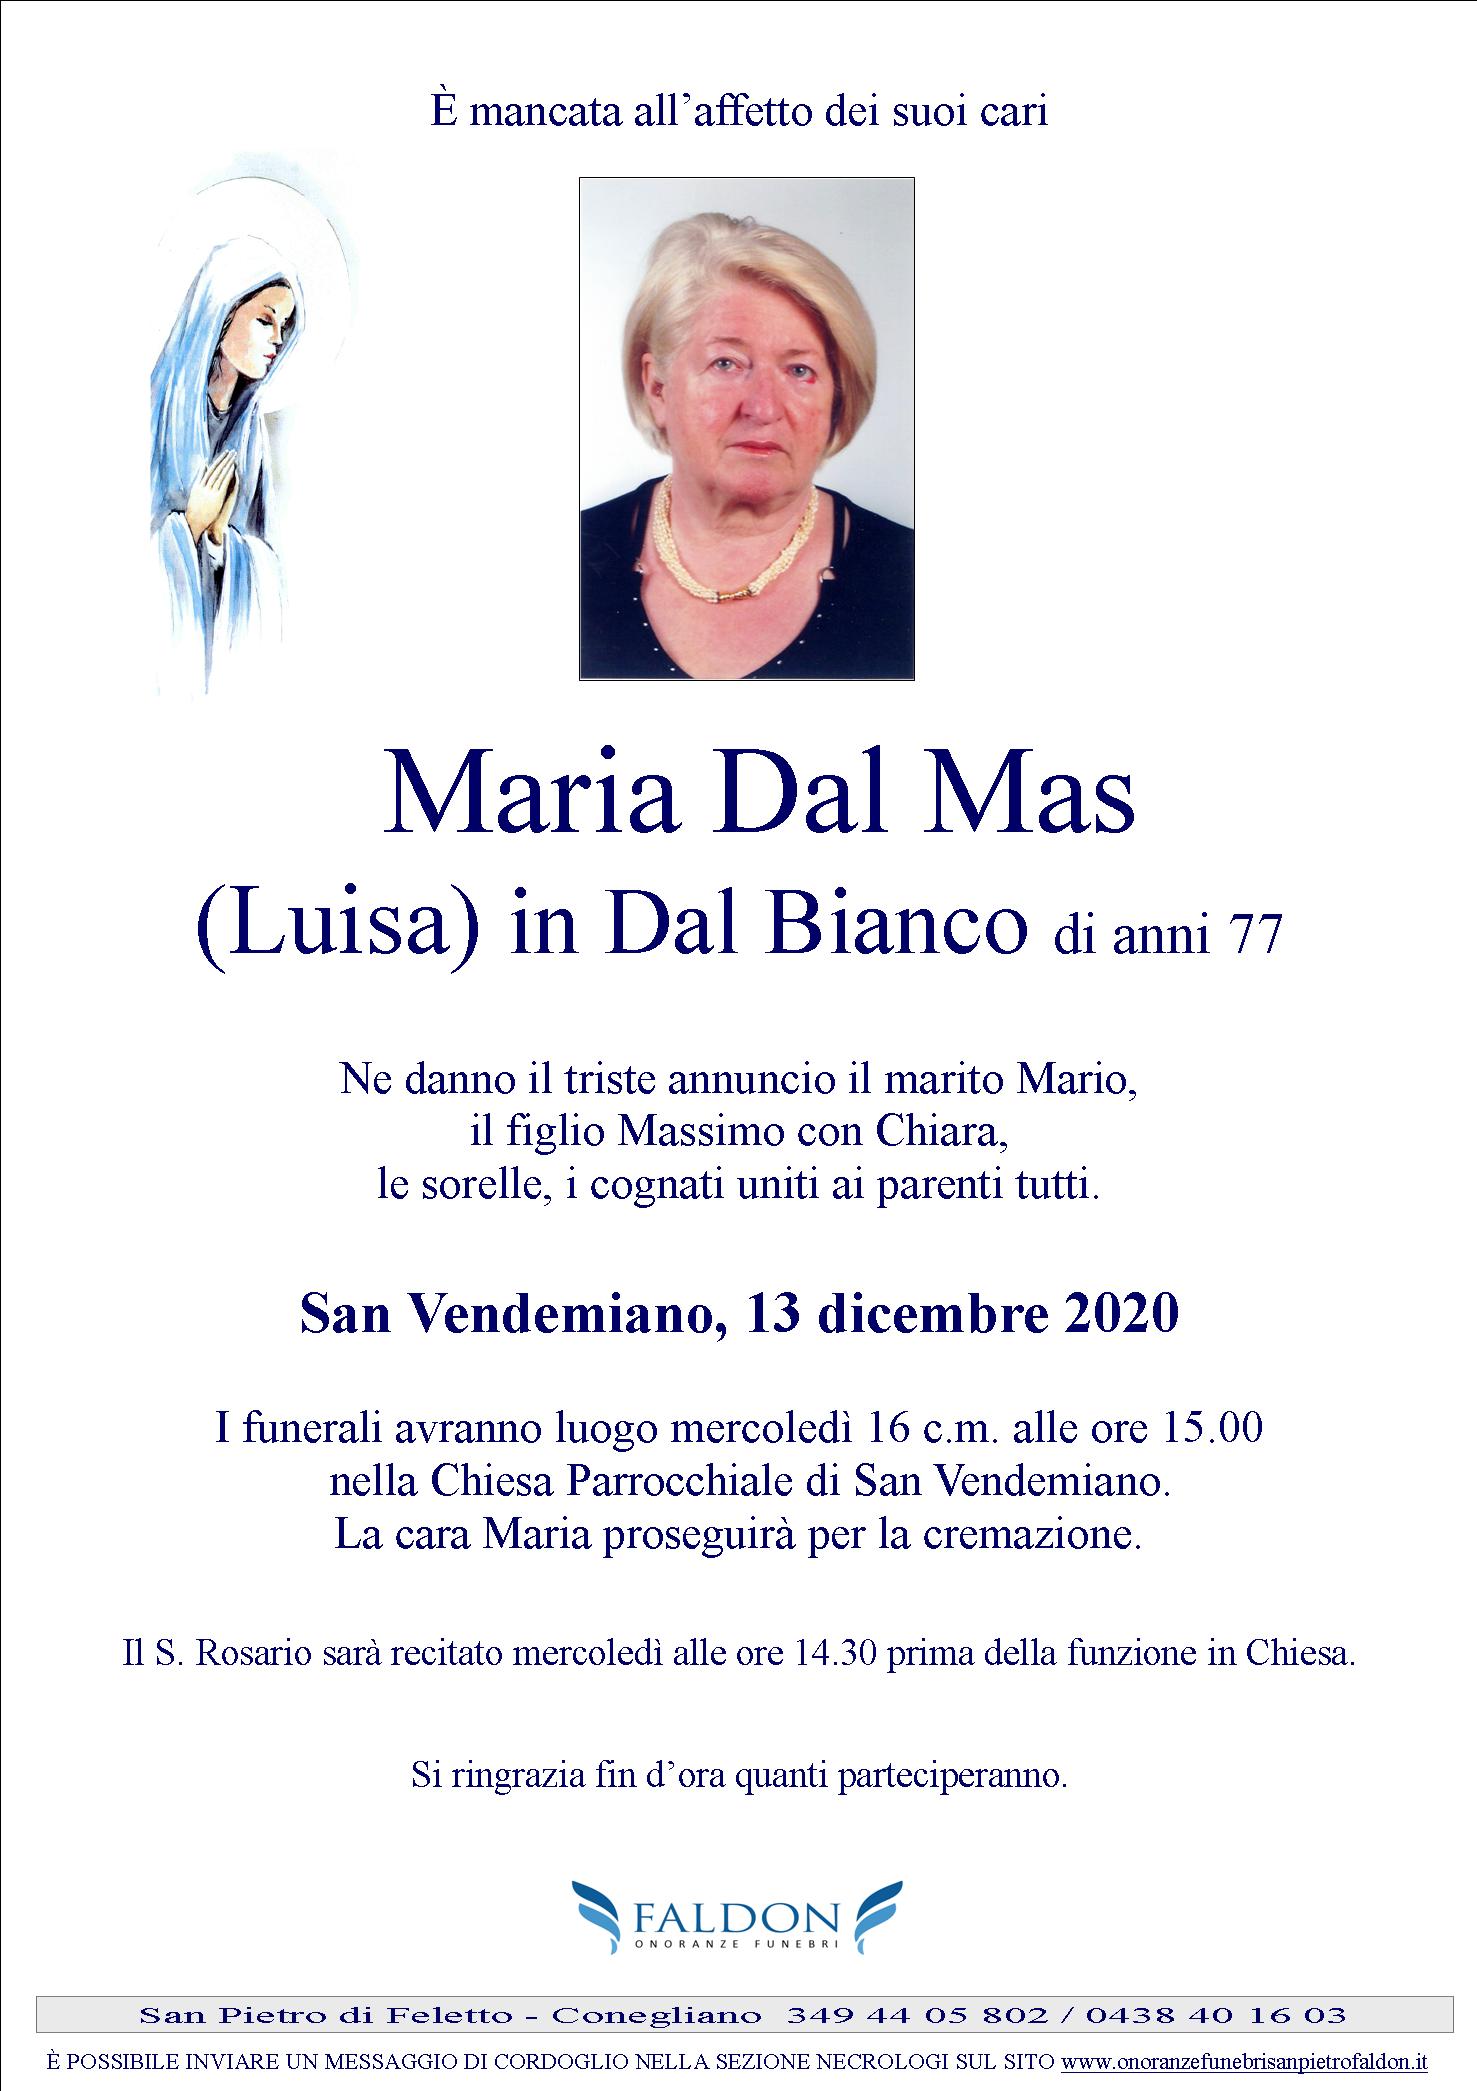 Maria Dal Mas